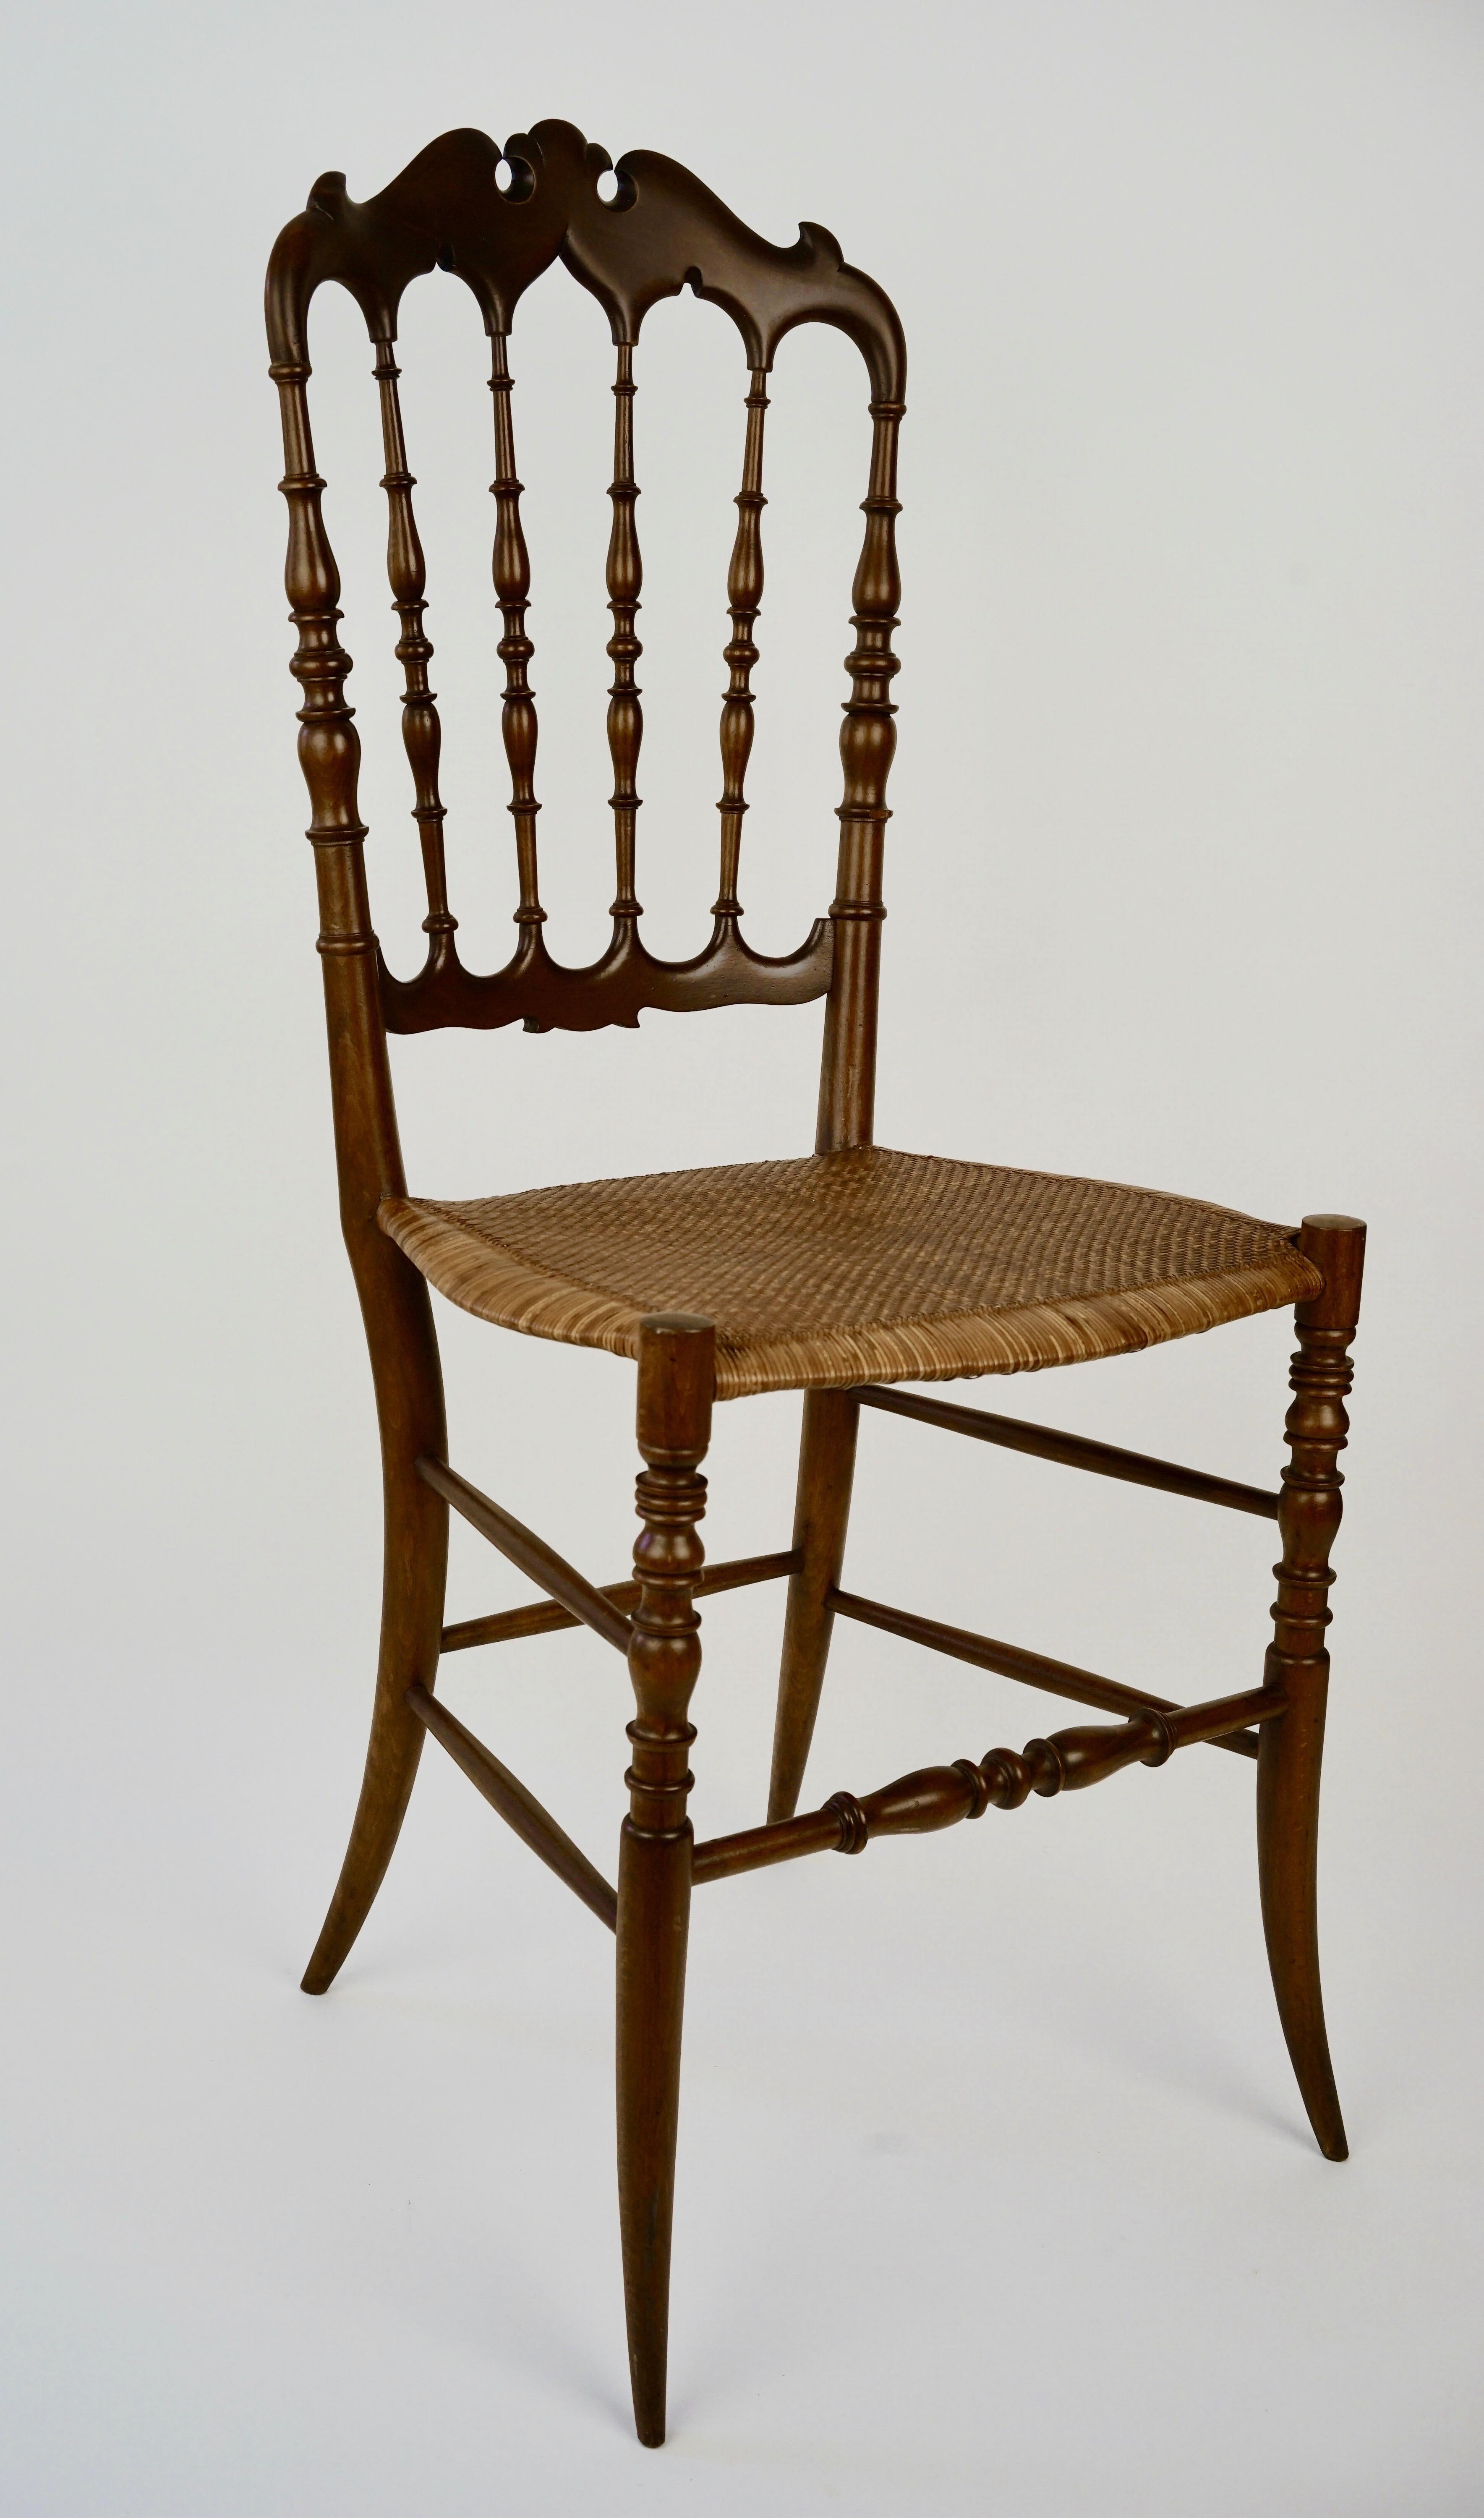 Version décorative de la chaise Chiavari, la Parisienne, datant des années 1950, est un classique moderne.
Il n'est pas seulement beau à regarder, c'est aussi une merveille d'ingénierie et de sophistication.
Il allie légèreté et robustesse dans une